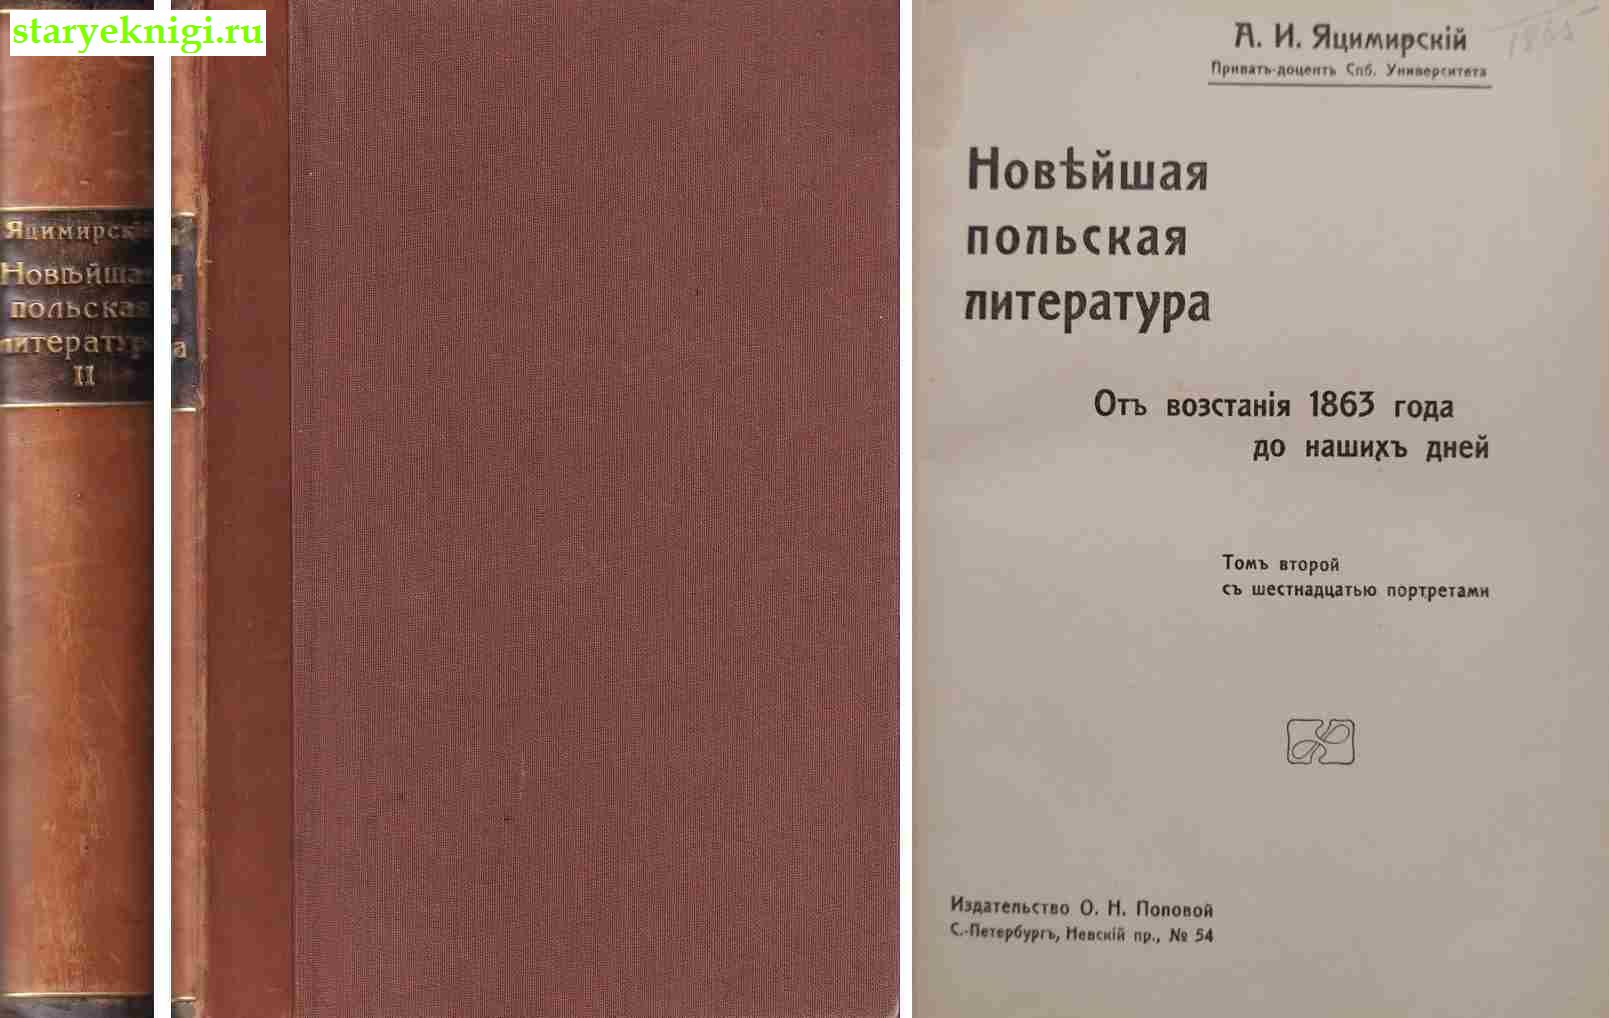 Новейшая польская литература. От восстания 1863 года до наших дней. Том 2, Яцимирский  А.И., книга